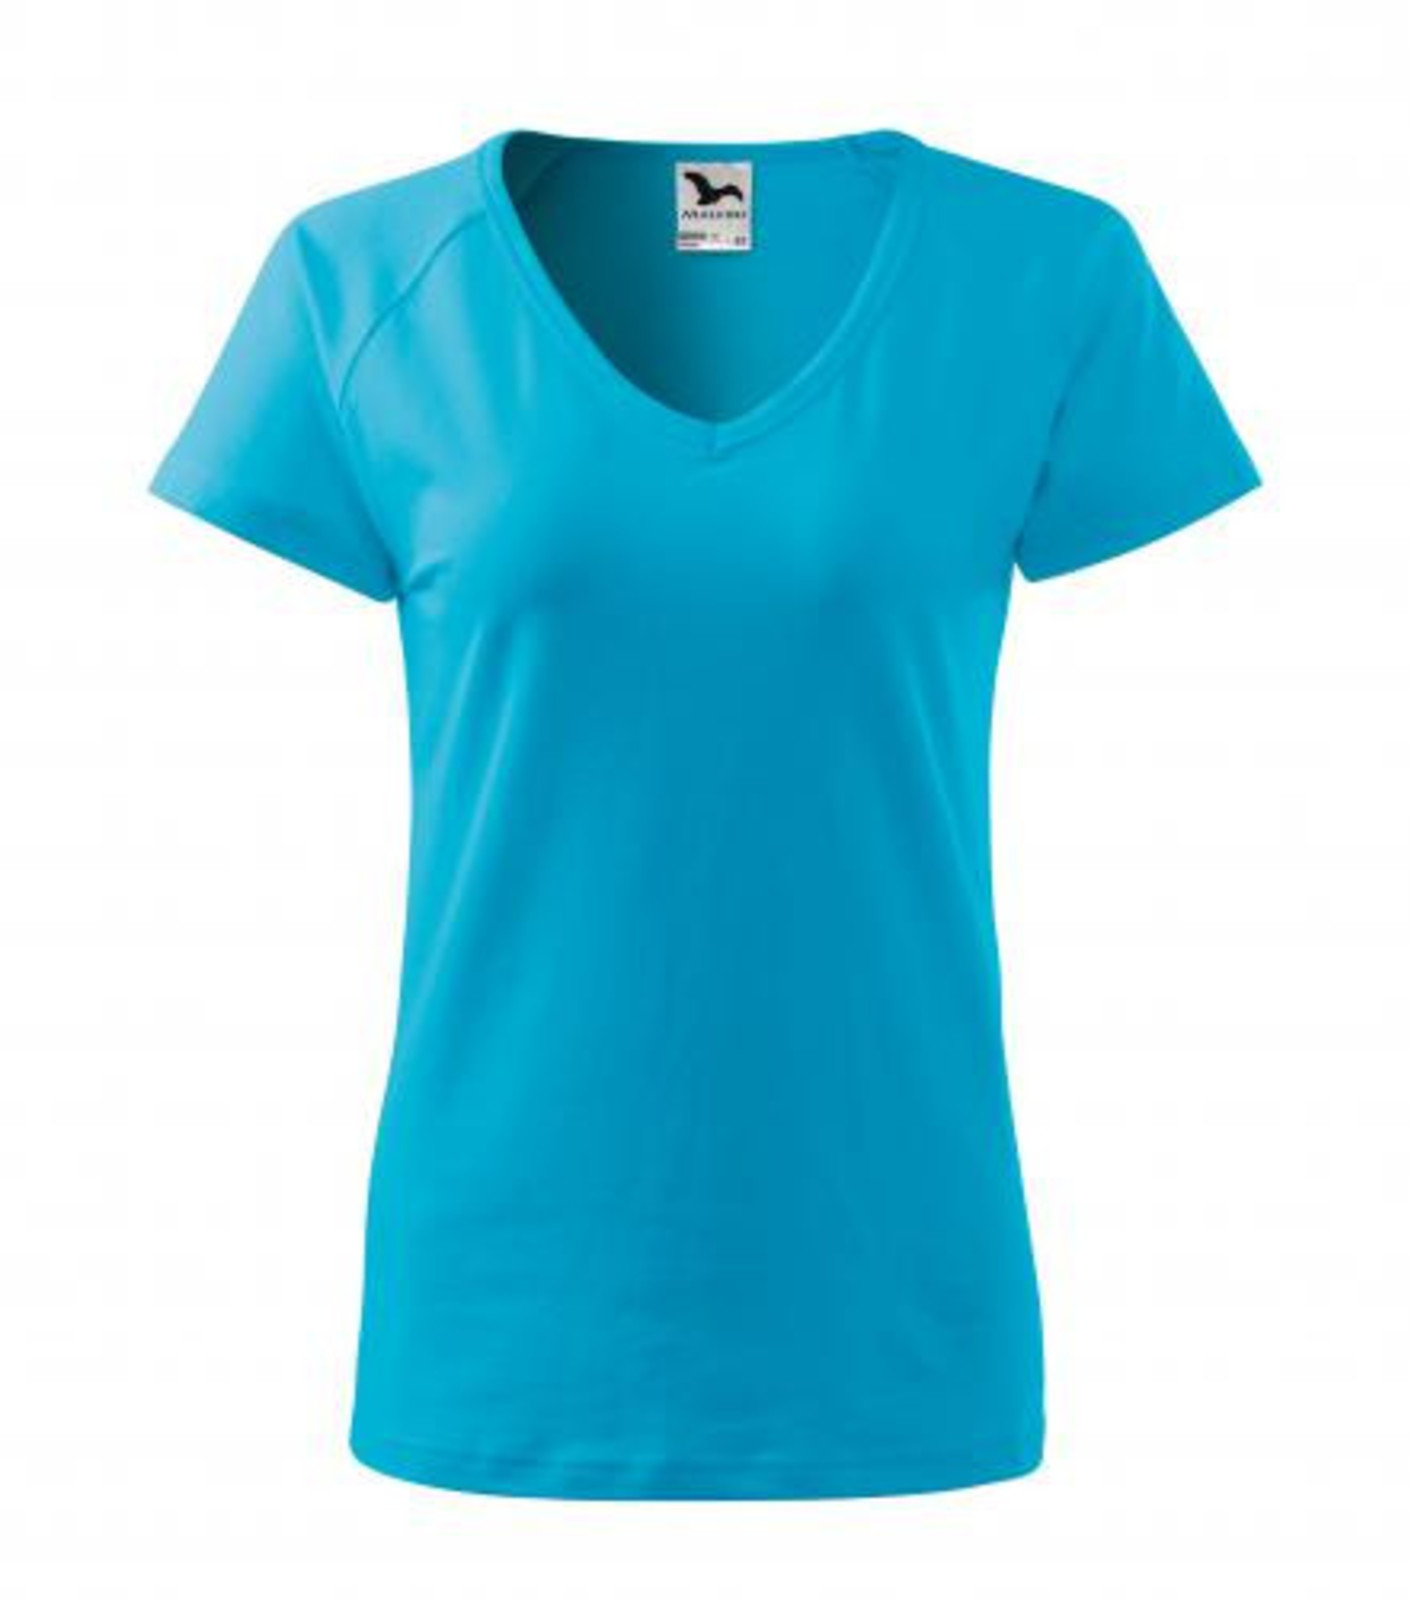 Dámske tričko s V výstrihom Adler Dream 128 - veľkosť: S, farba: tyrkysová